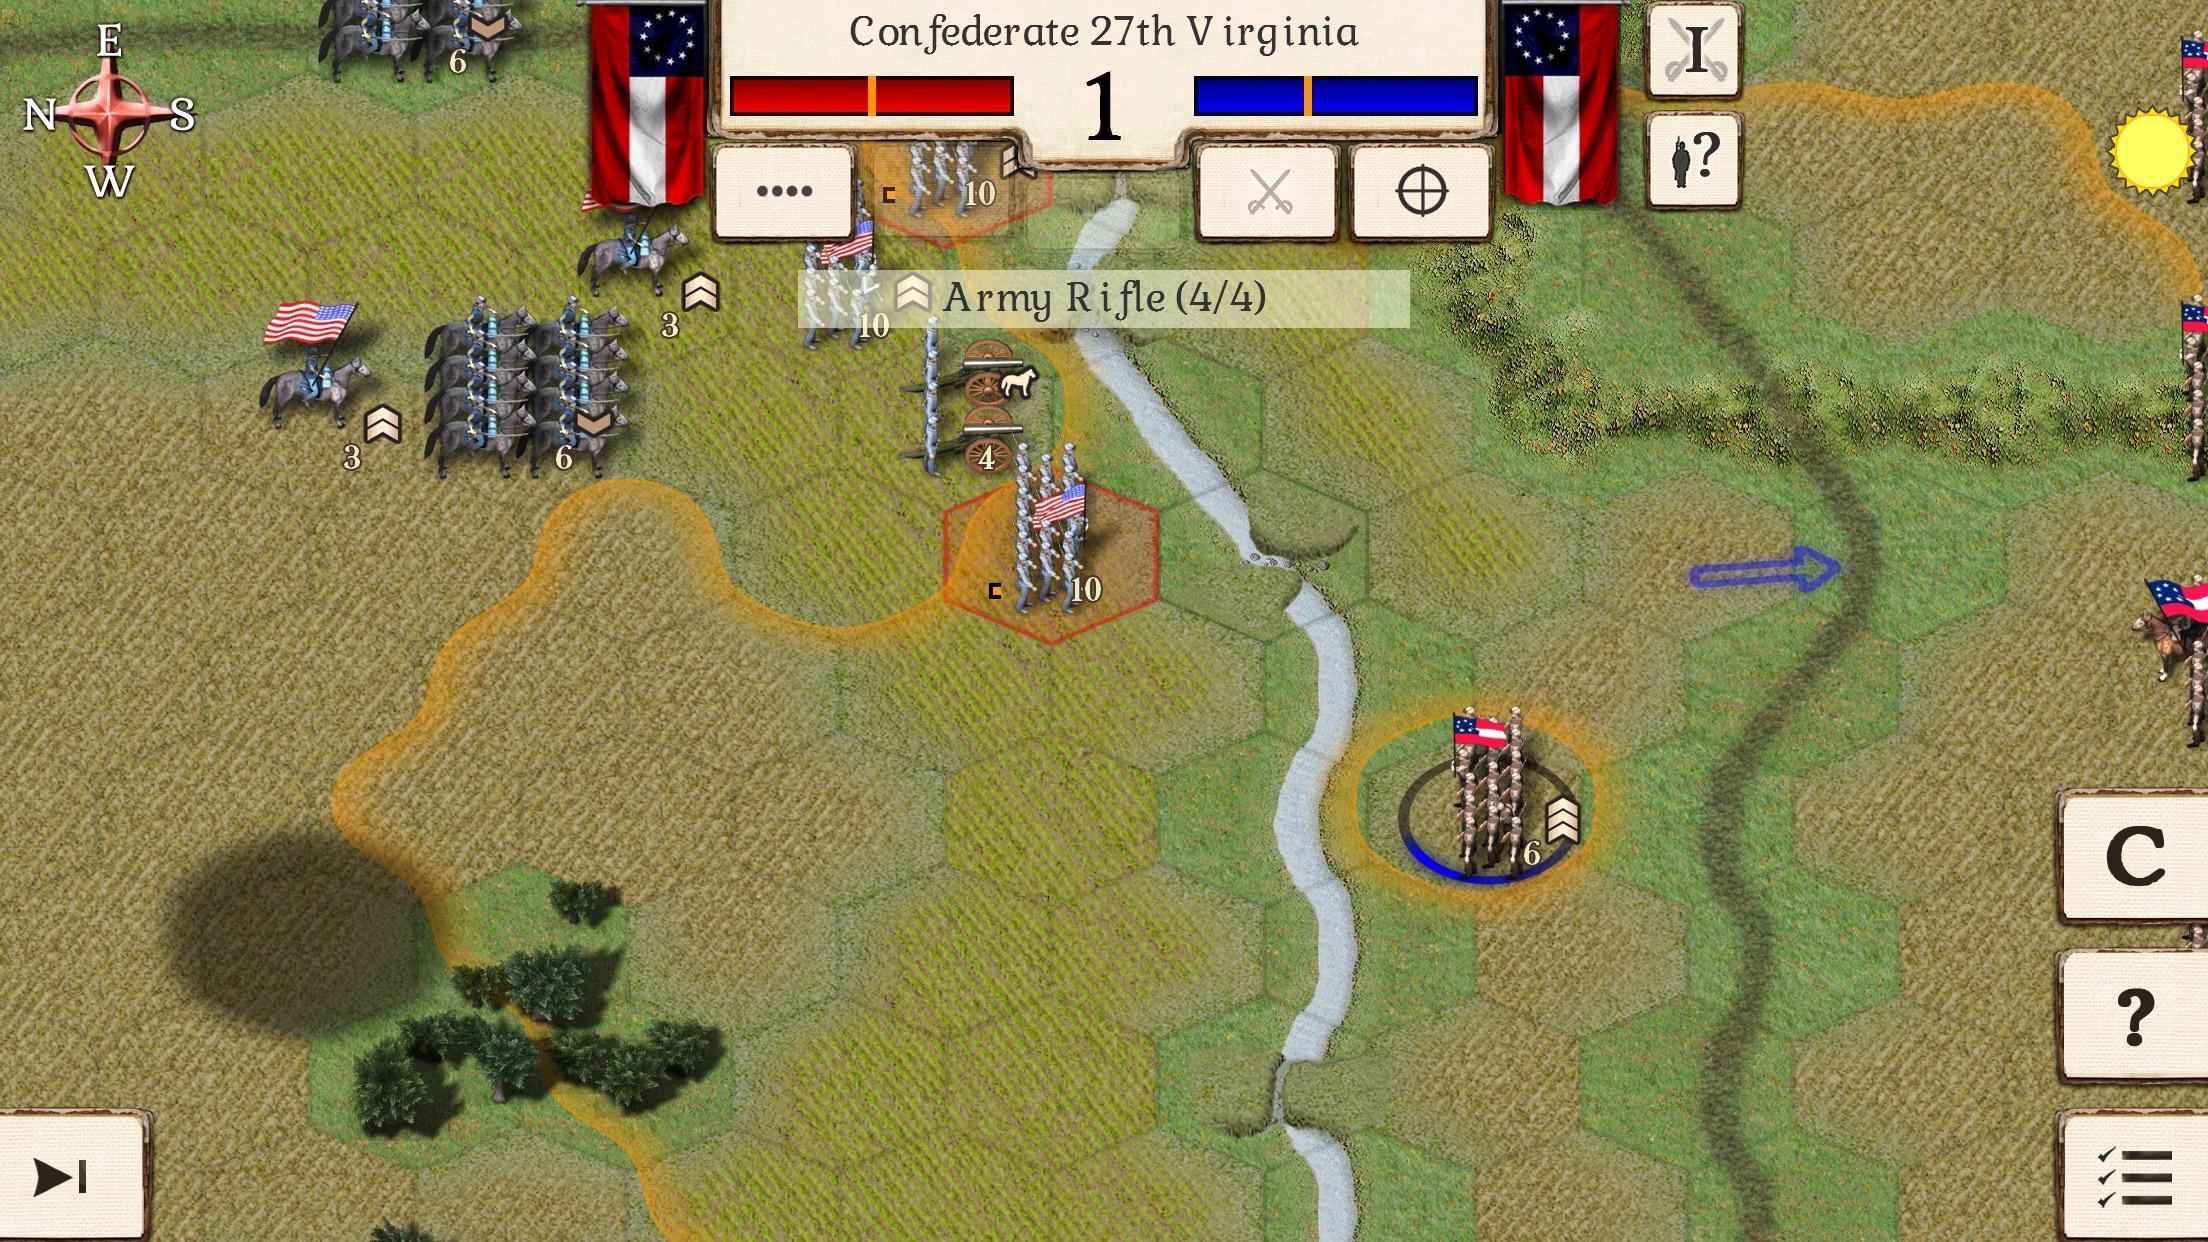 Игра великая история. Игры про гражданскую войну в США на андроид. Симулятор битвы гражданской войны.